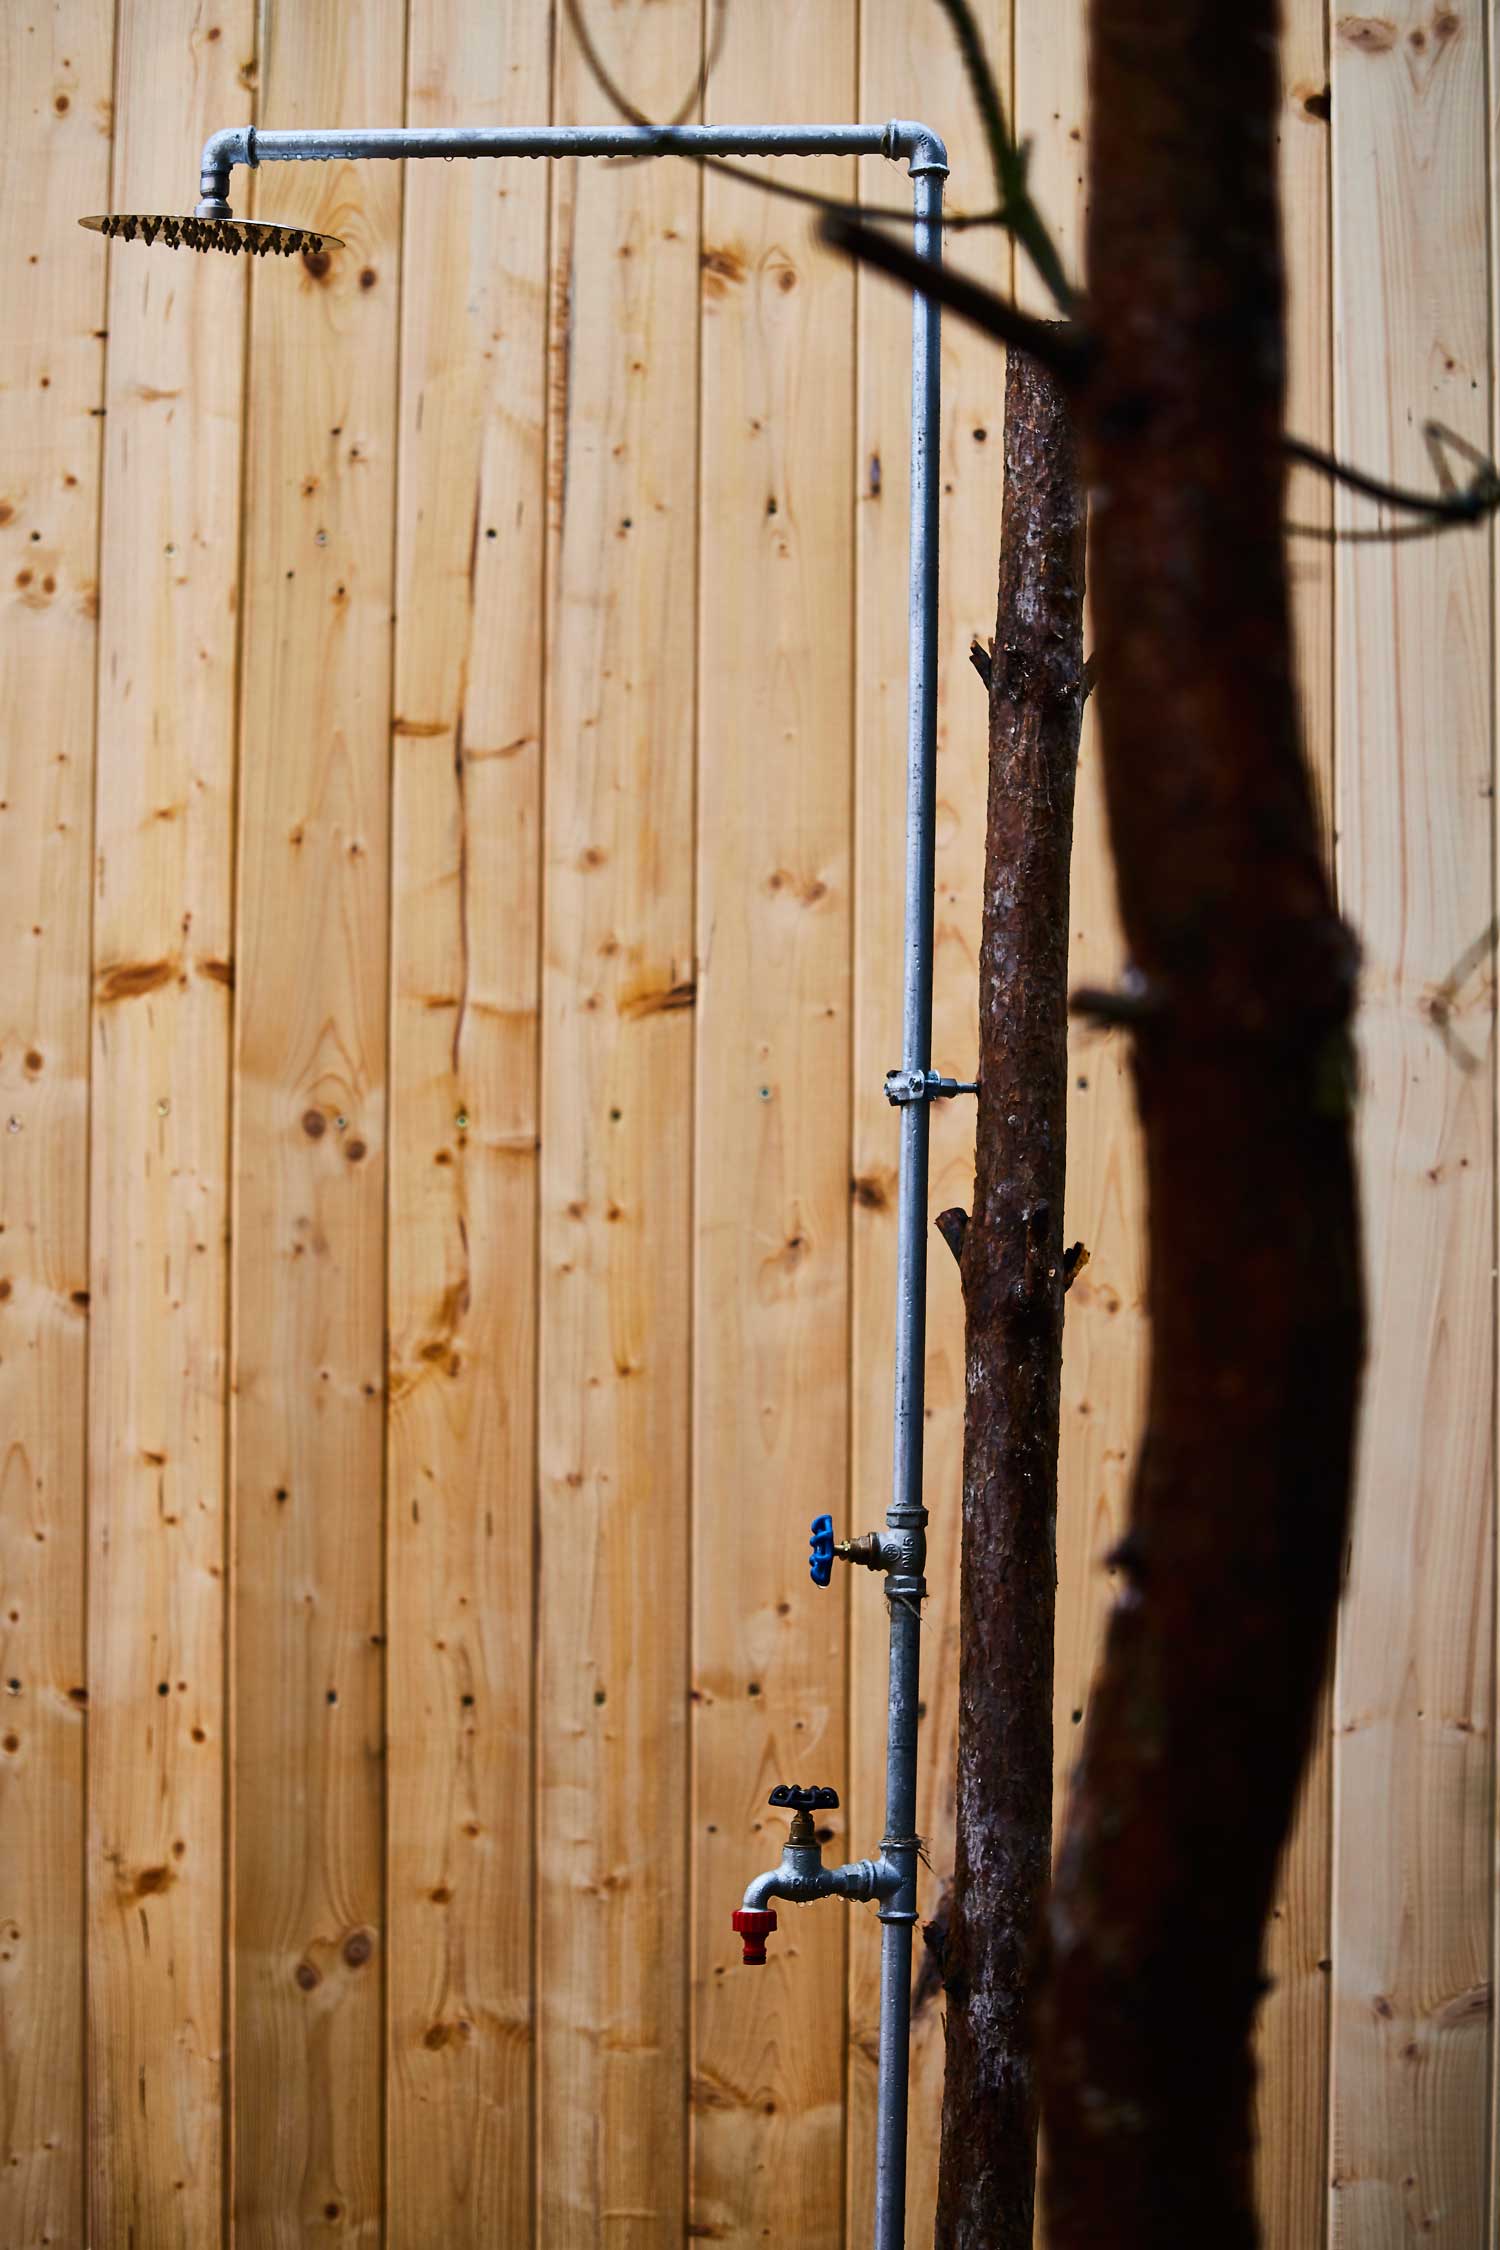 Prysznic zewnętrzny do schłodzenia po wyjściu z sauny przy domku w lesie